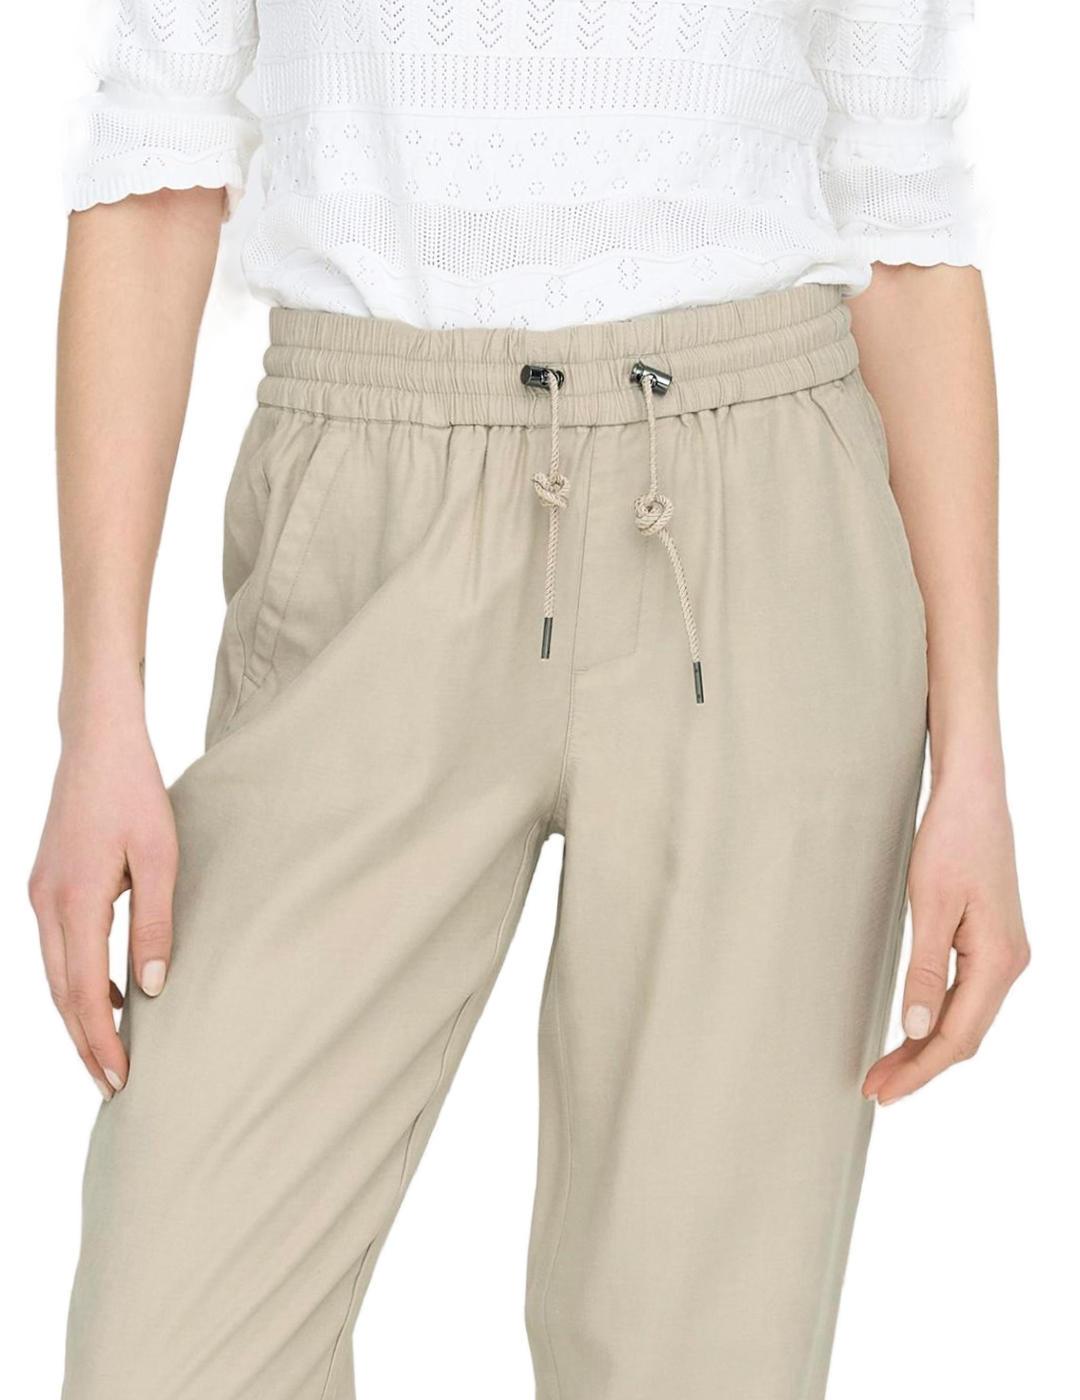 Pantalones Only Kelda jogger beige con puño de mujer